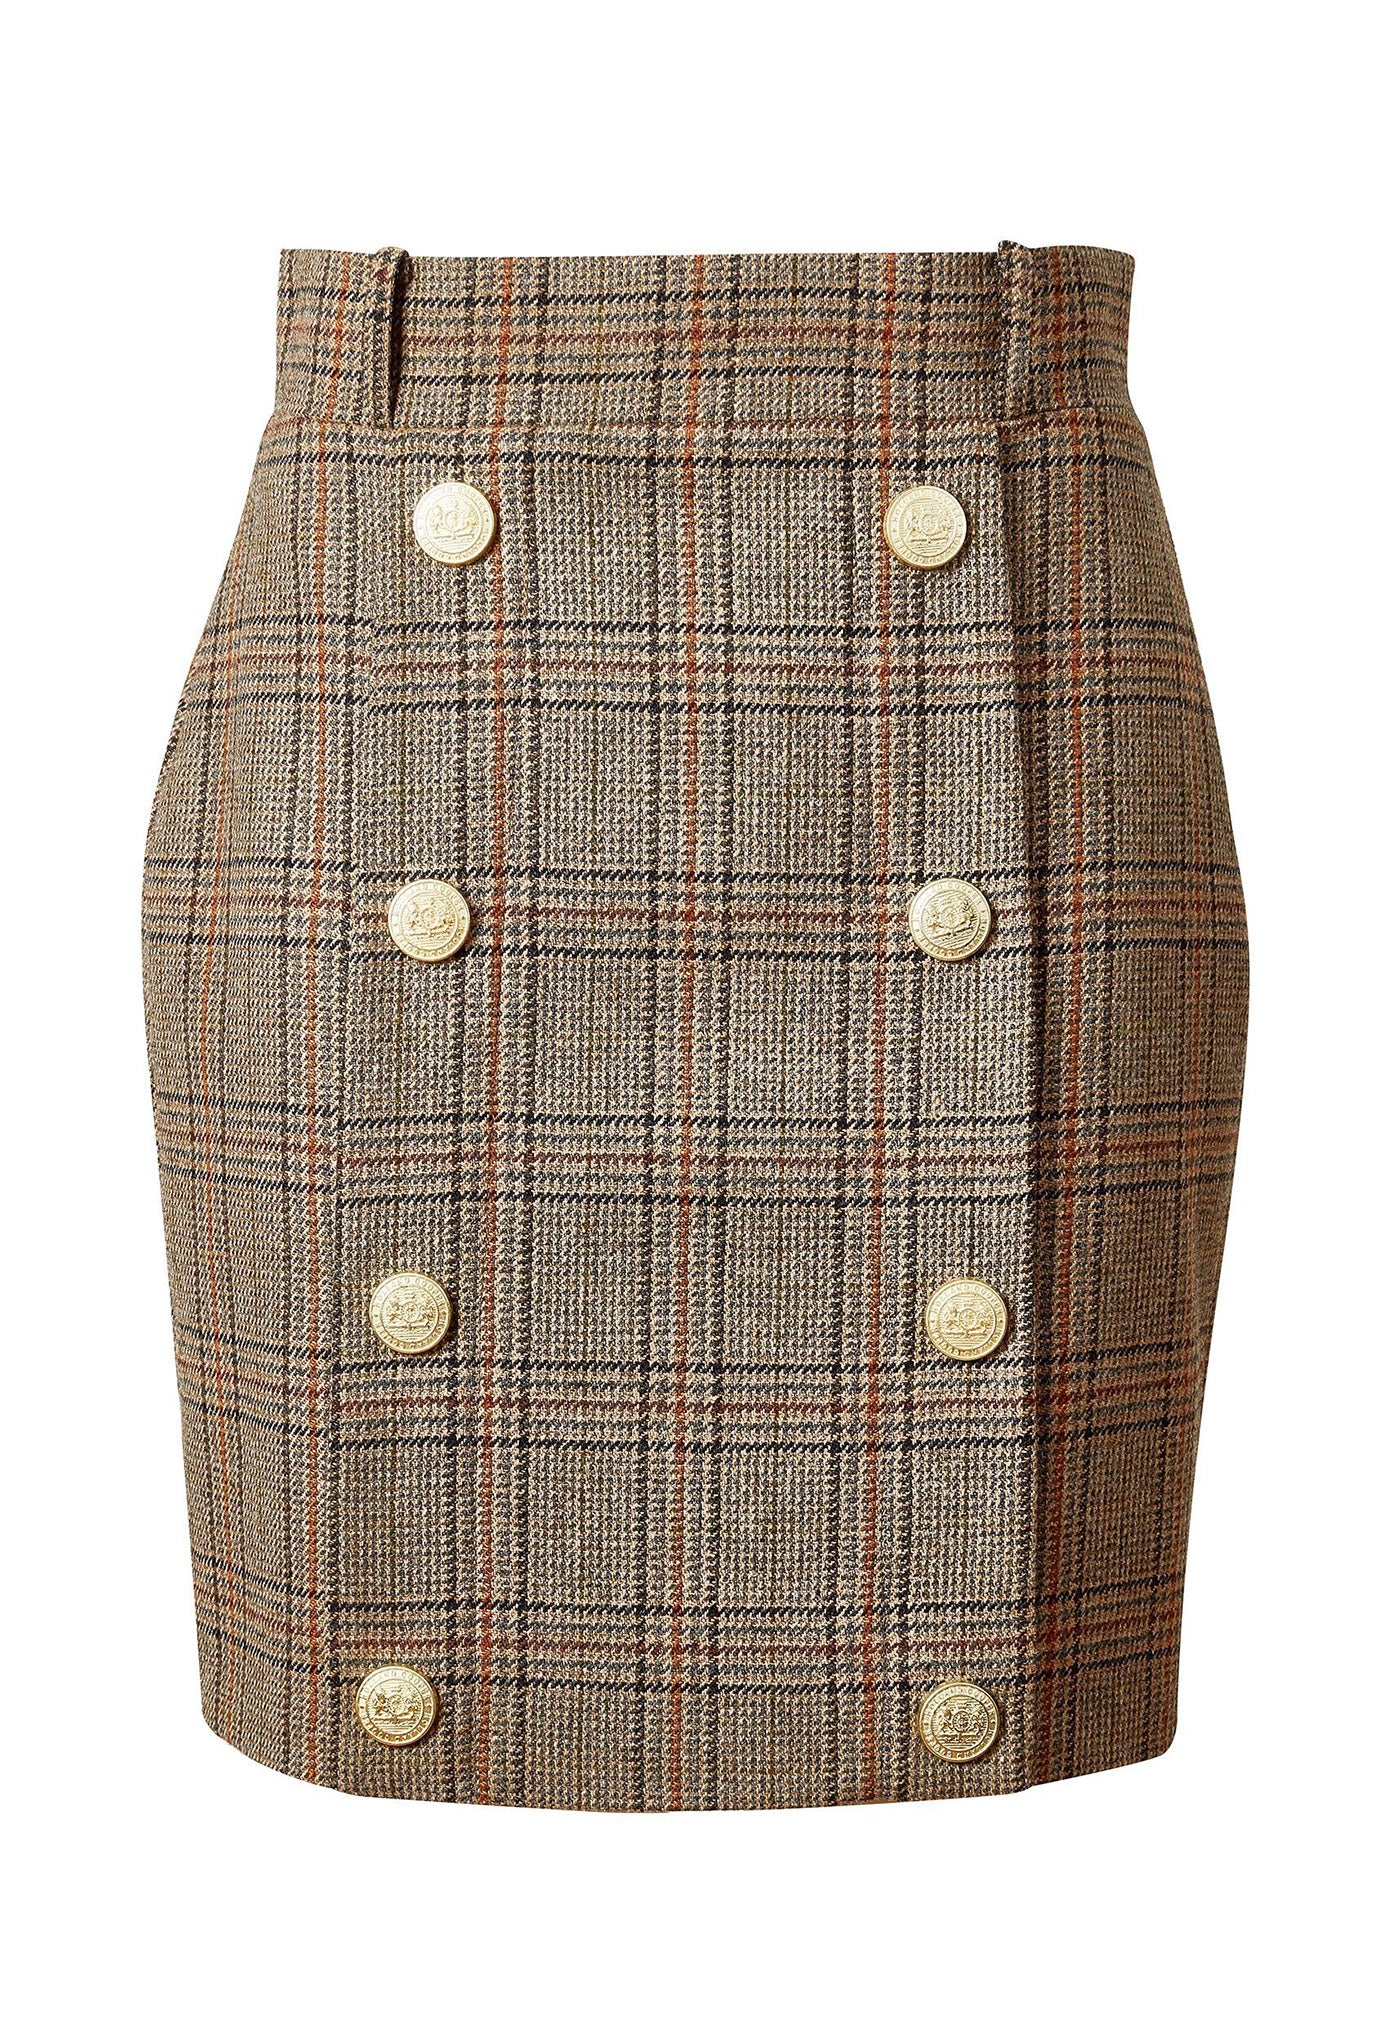 Knightsbridge Skirt - Bourbon Tweed sold by Angel Divine